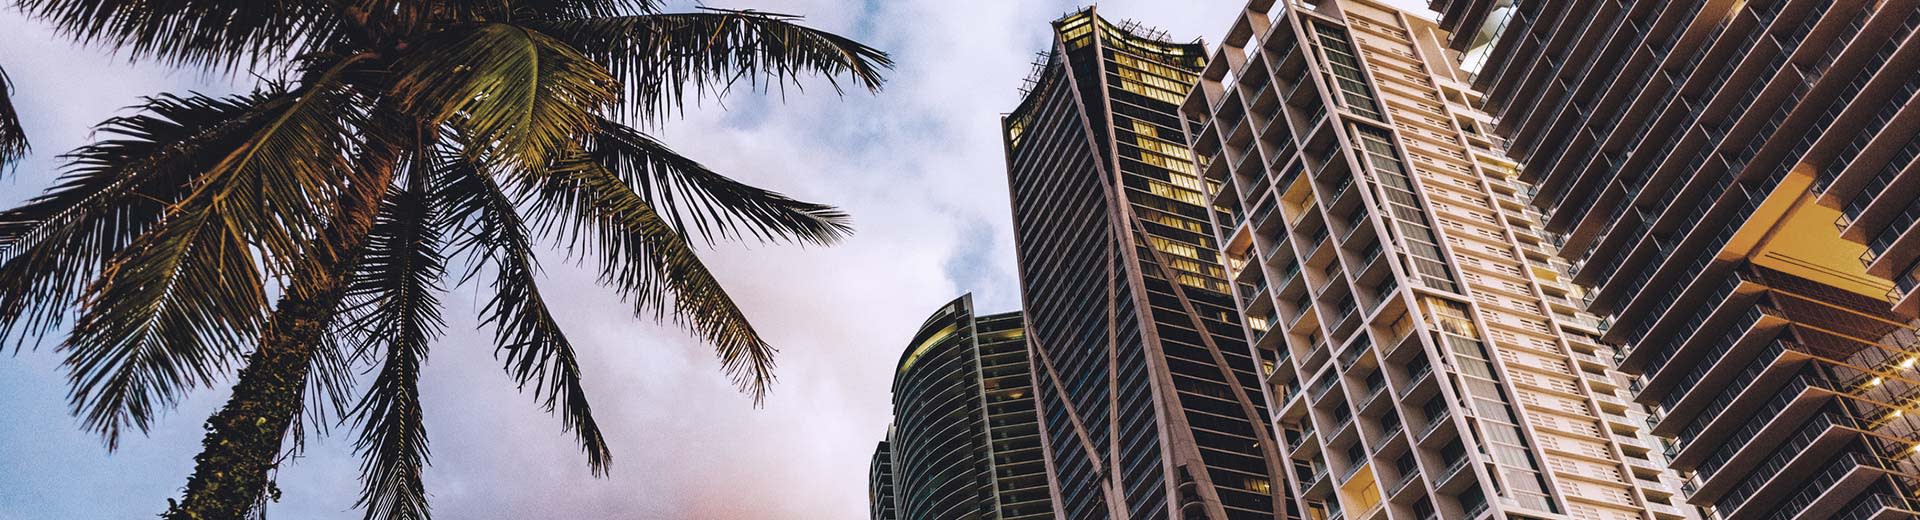 迈阿密的棕榈树和摩天大楼。